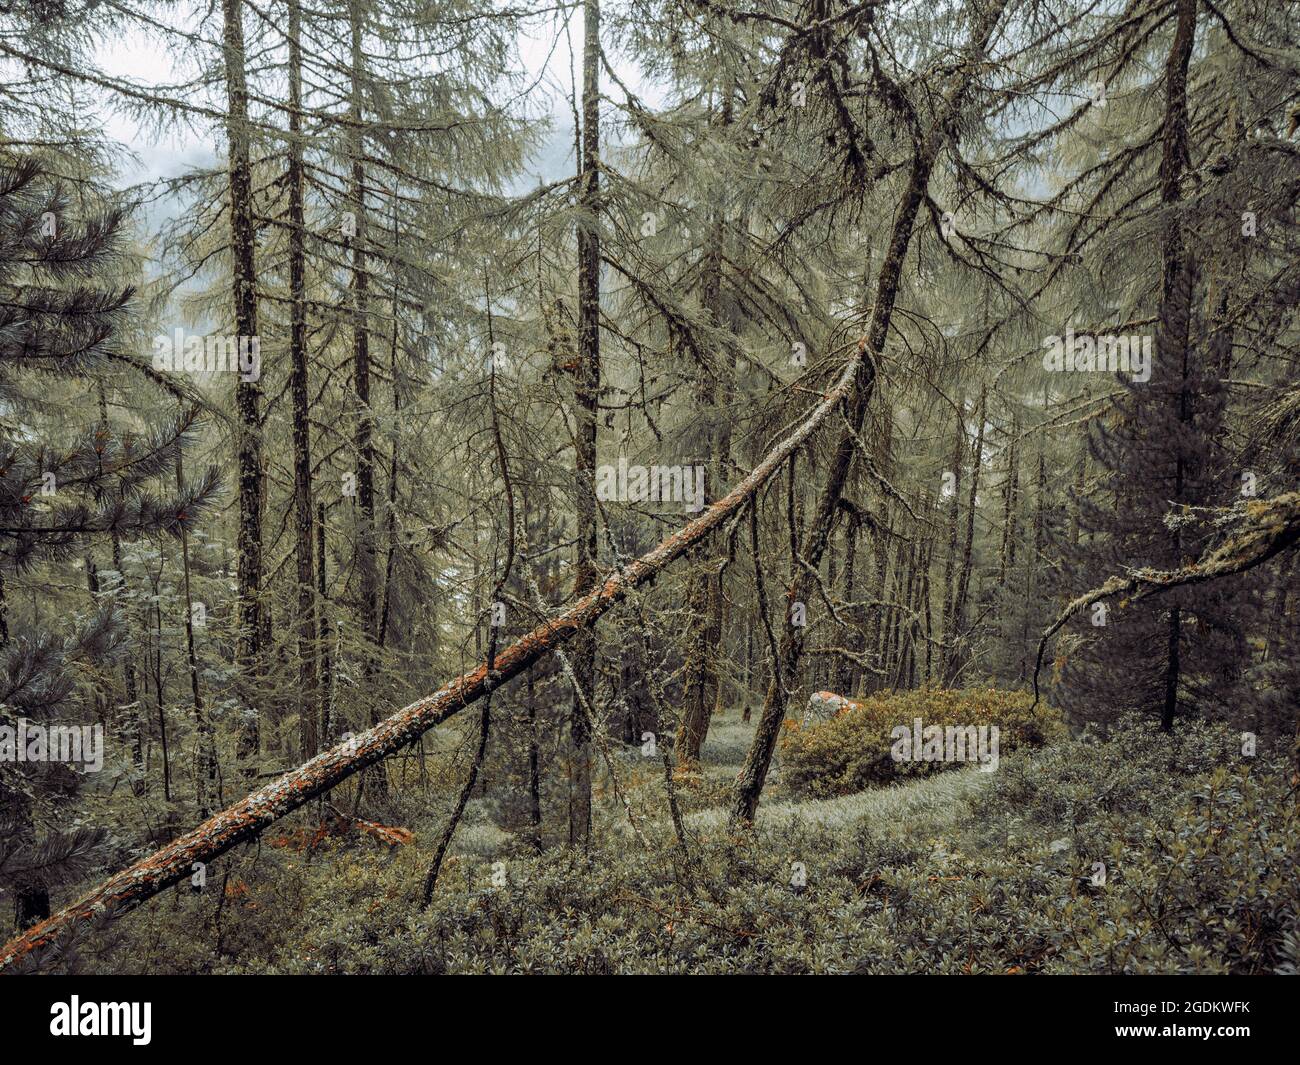 Densos y exuberantes bosques alpinos en Suiza. Los pinos, rocas, musgos y hierba cubren el suelo del bosque en un escenario natural perfecto. Foto de stock